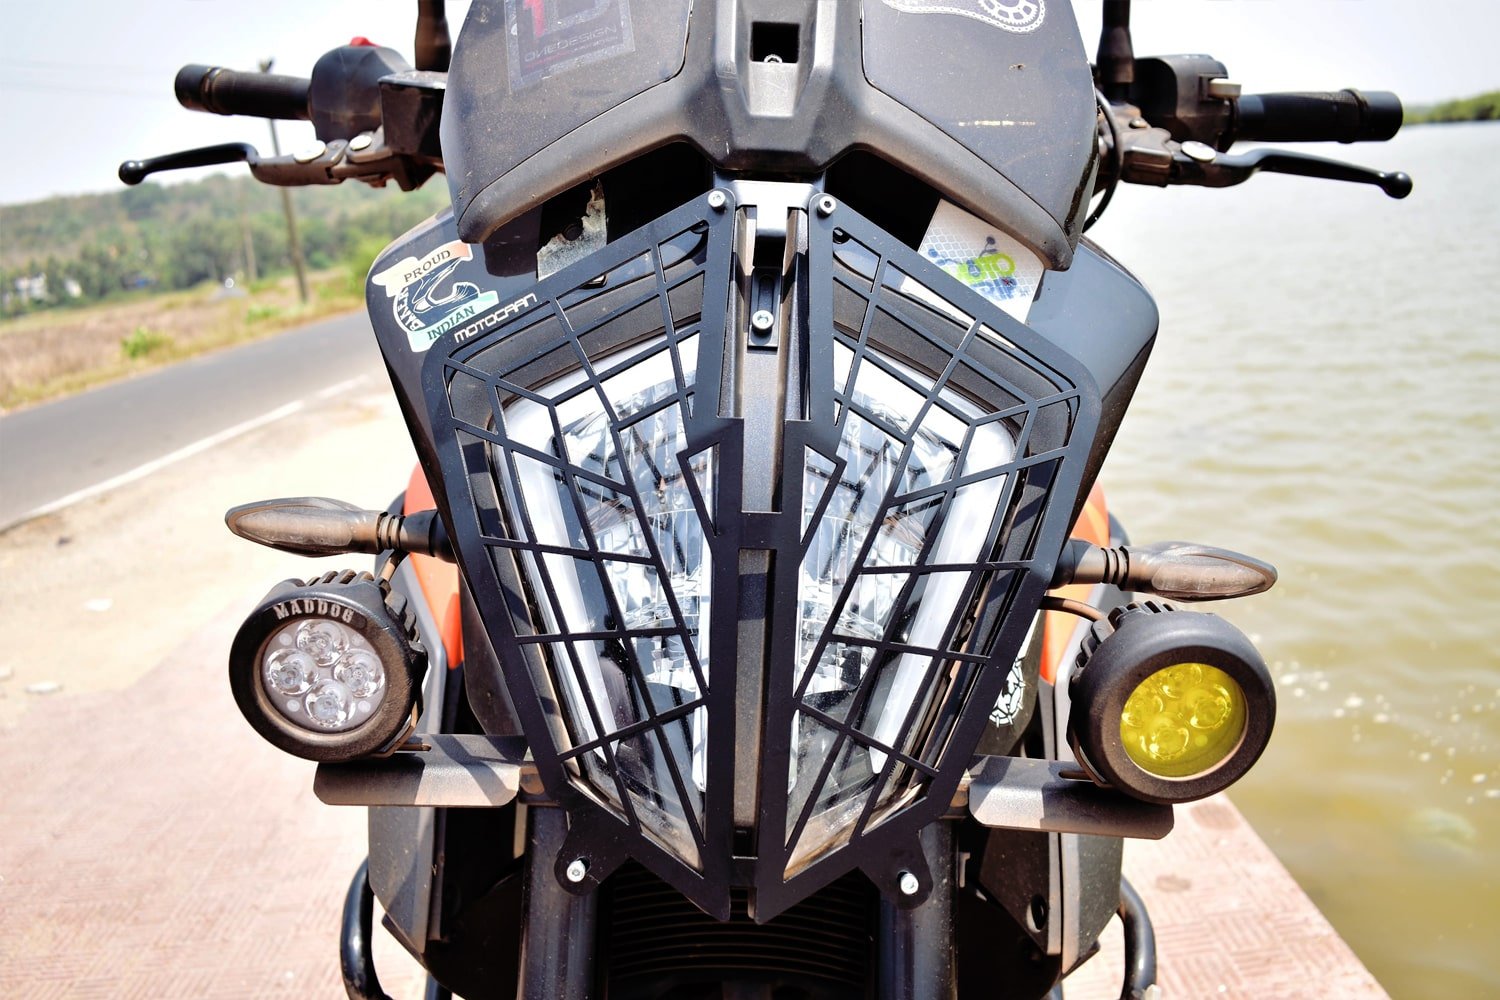 KTM 390 Adventure motocaan Headlight Grill - LRL Motors